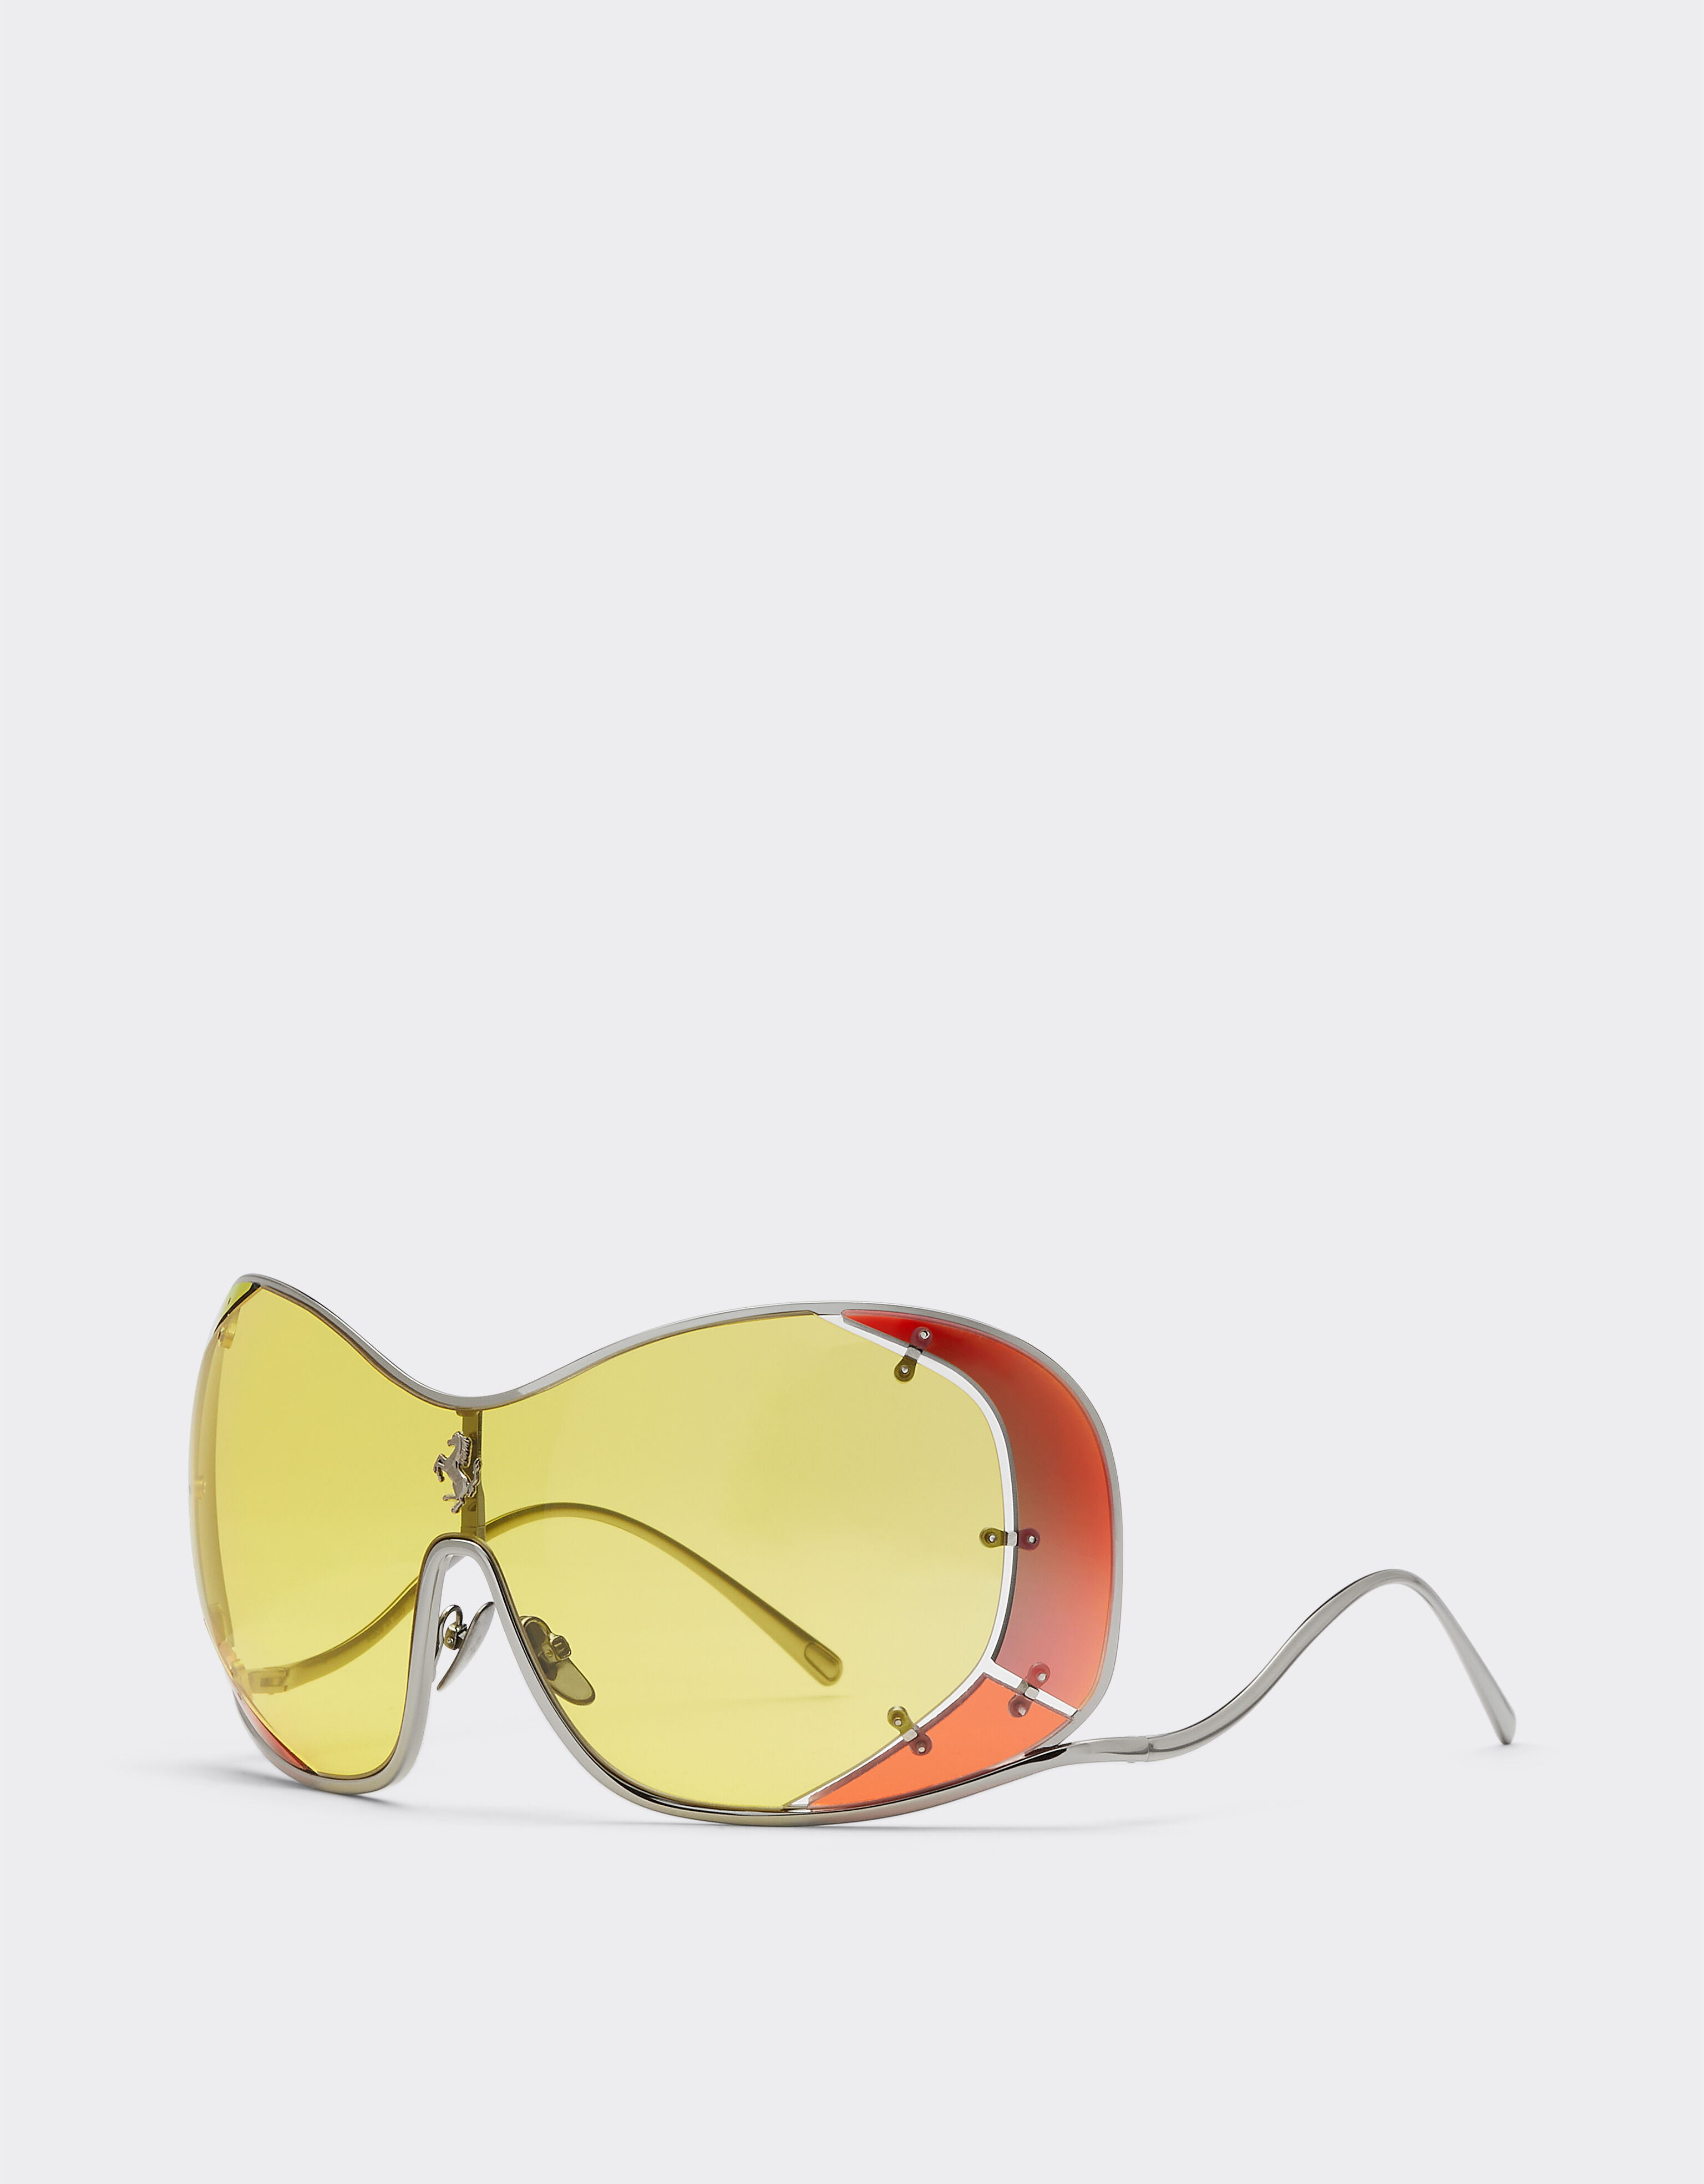 Ferrari Ferrari-Sonnenbrille mit gelben Gläsern Dunkelgrau F0639f